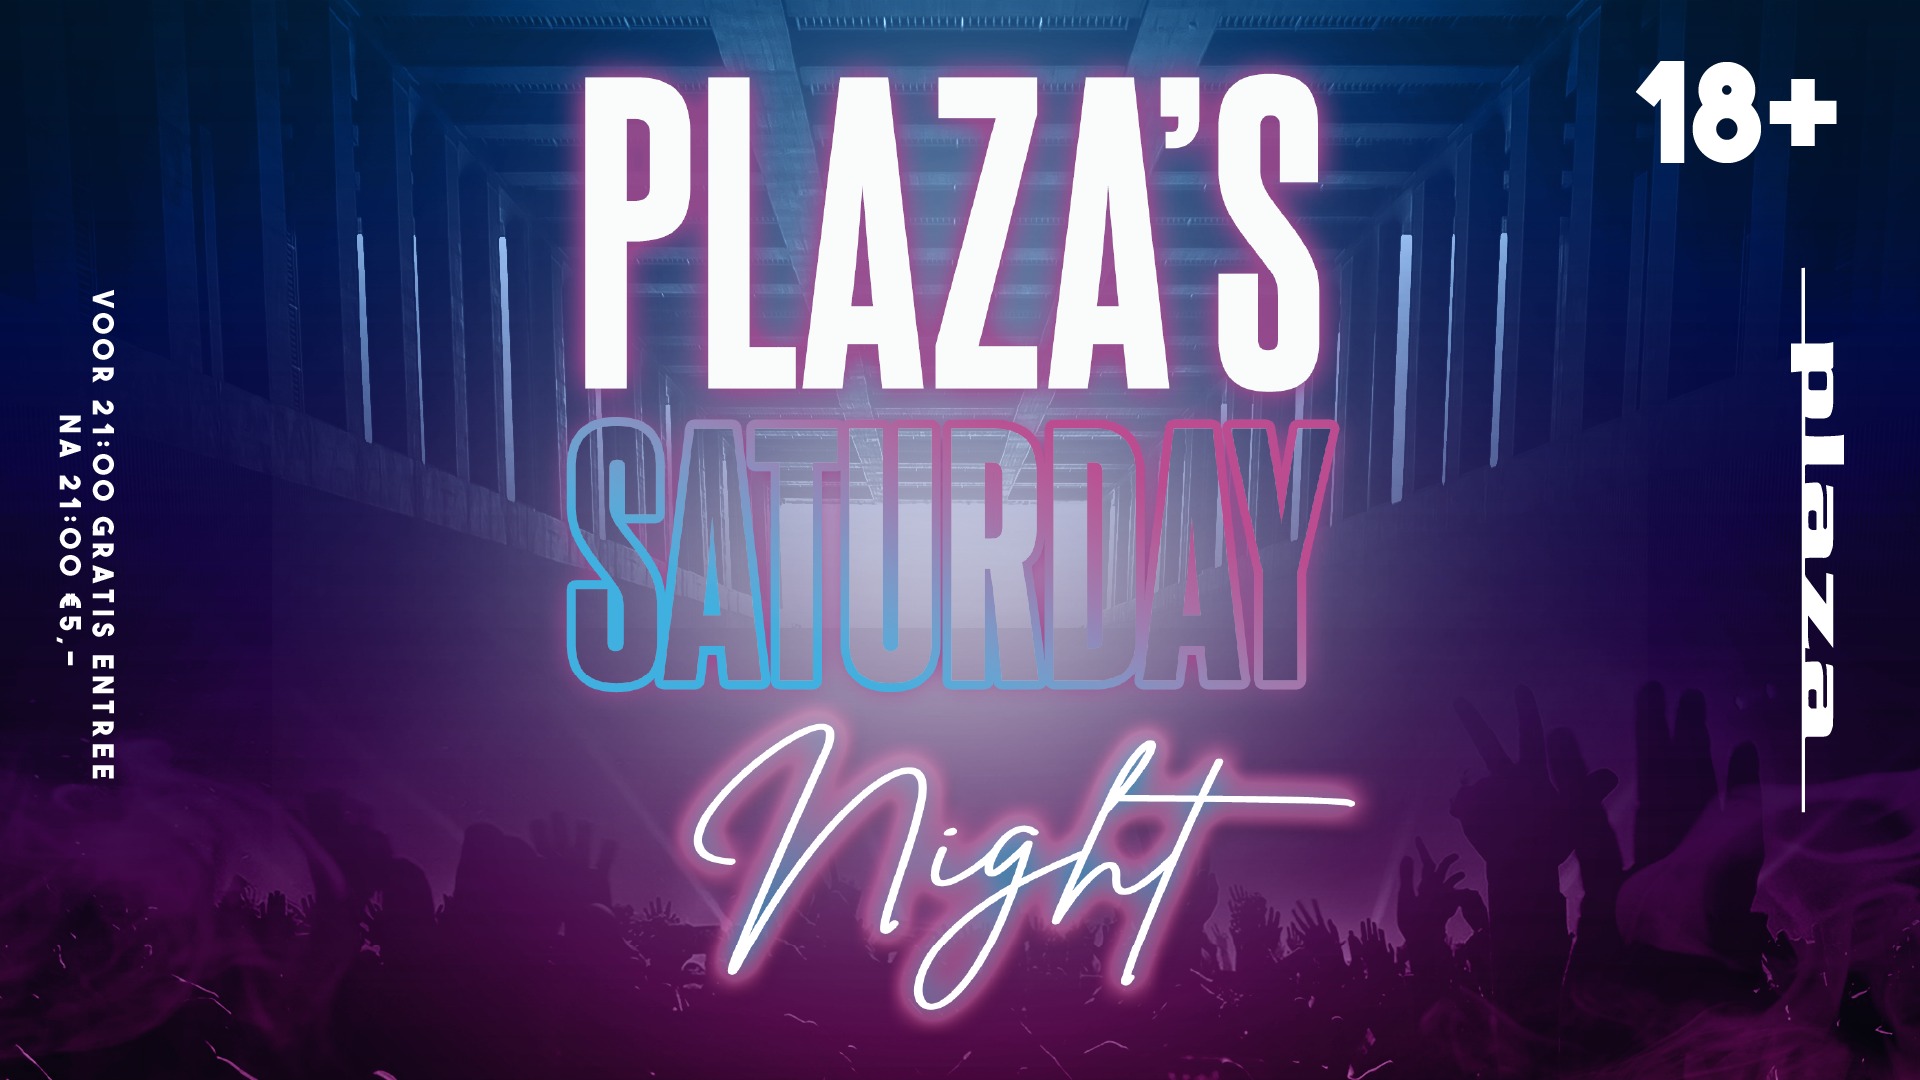 Plaza's Saturday